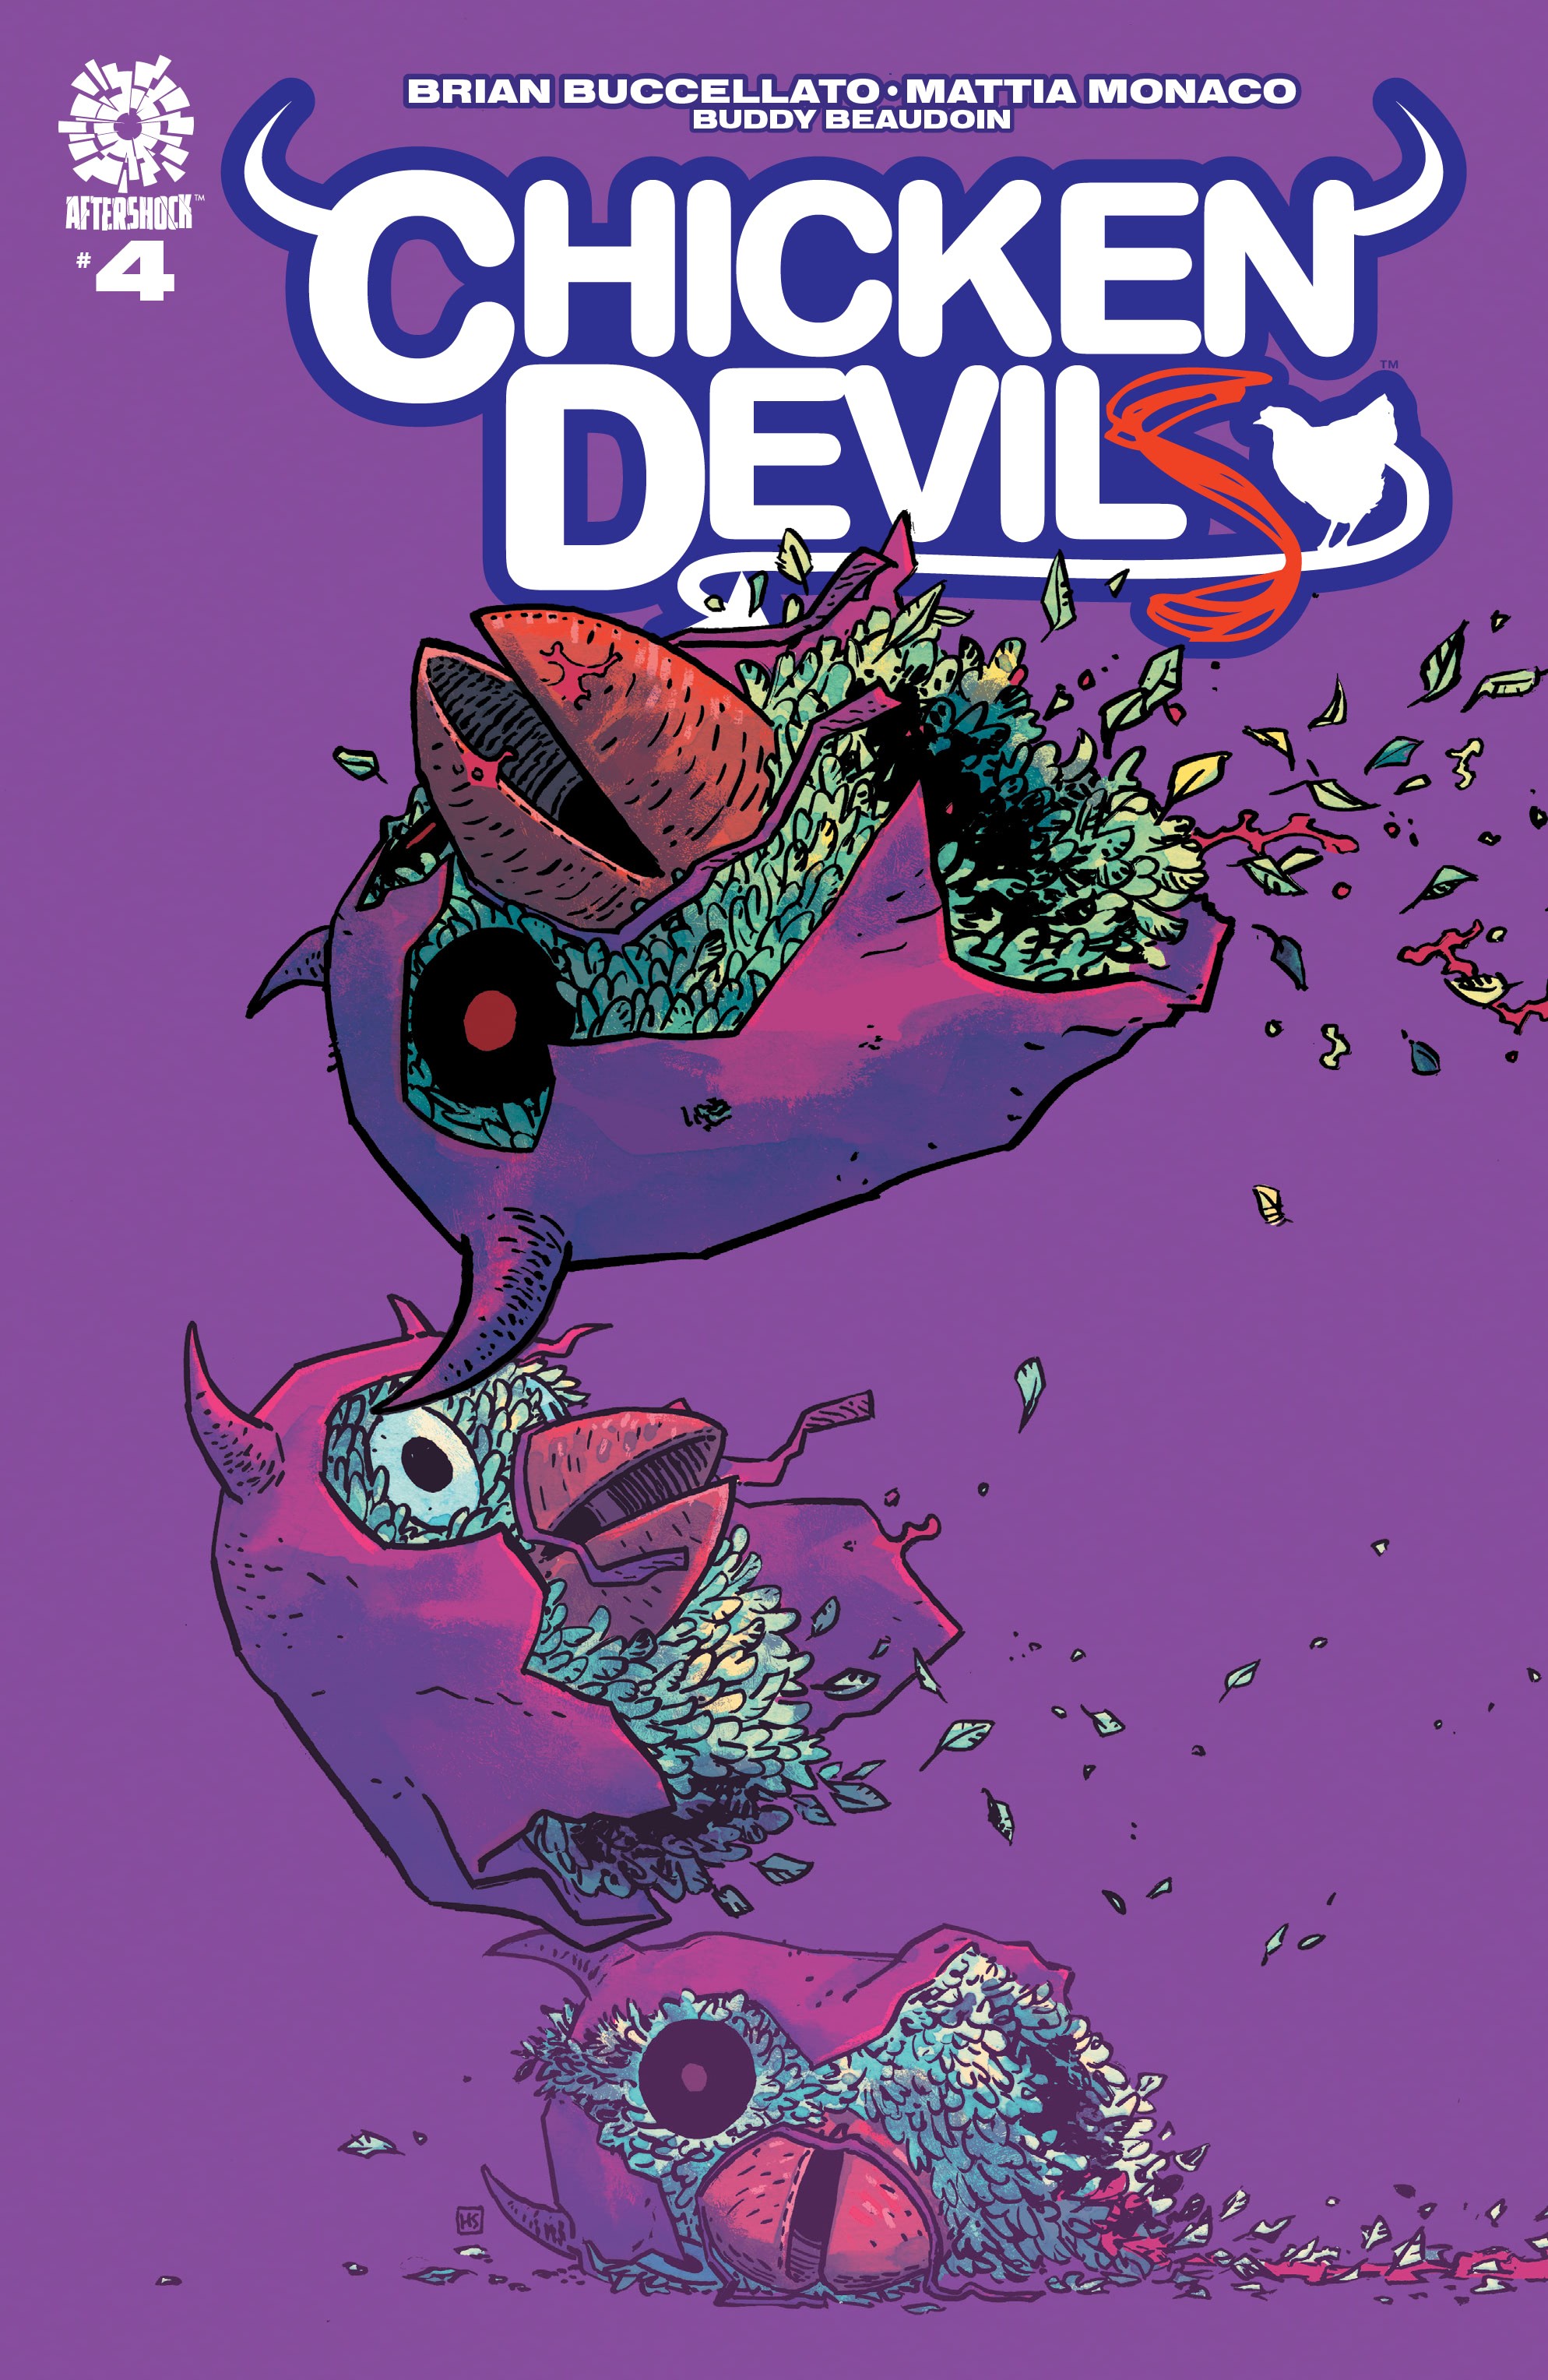 Read online Chicken Devils comic -  Issue #4 - 1